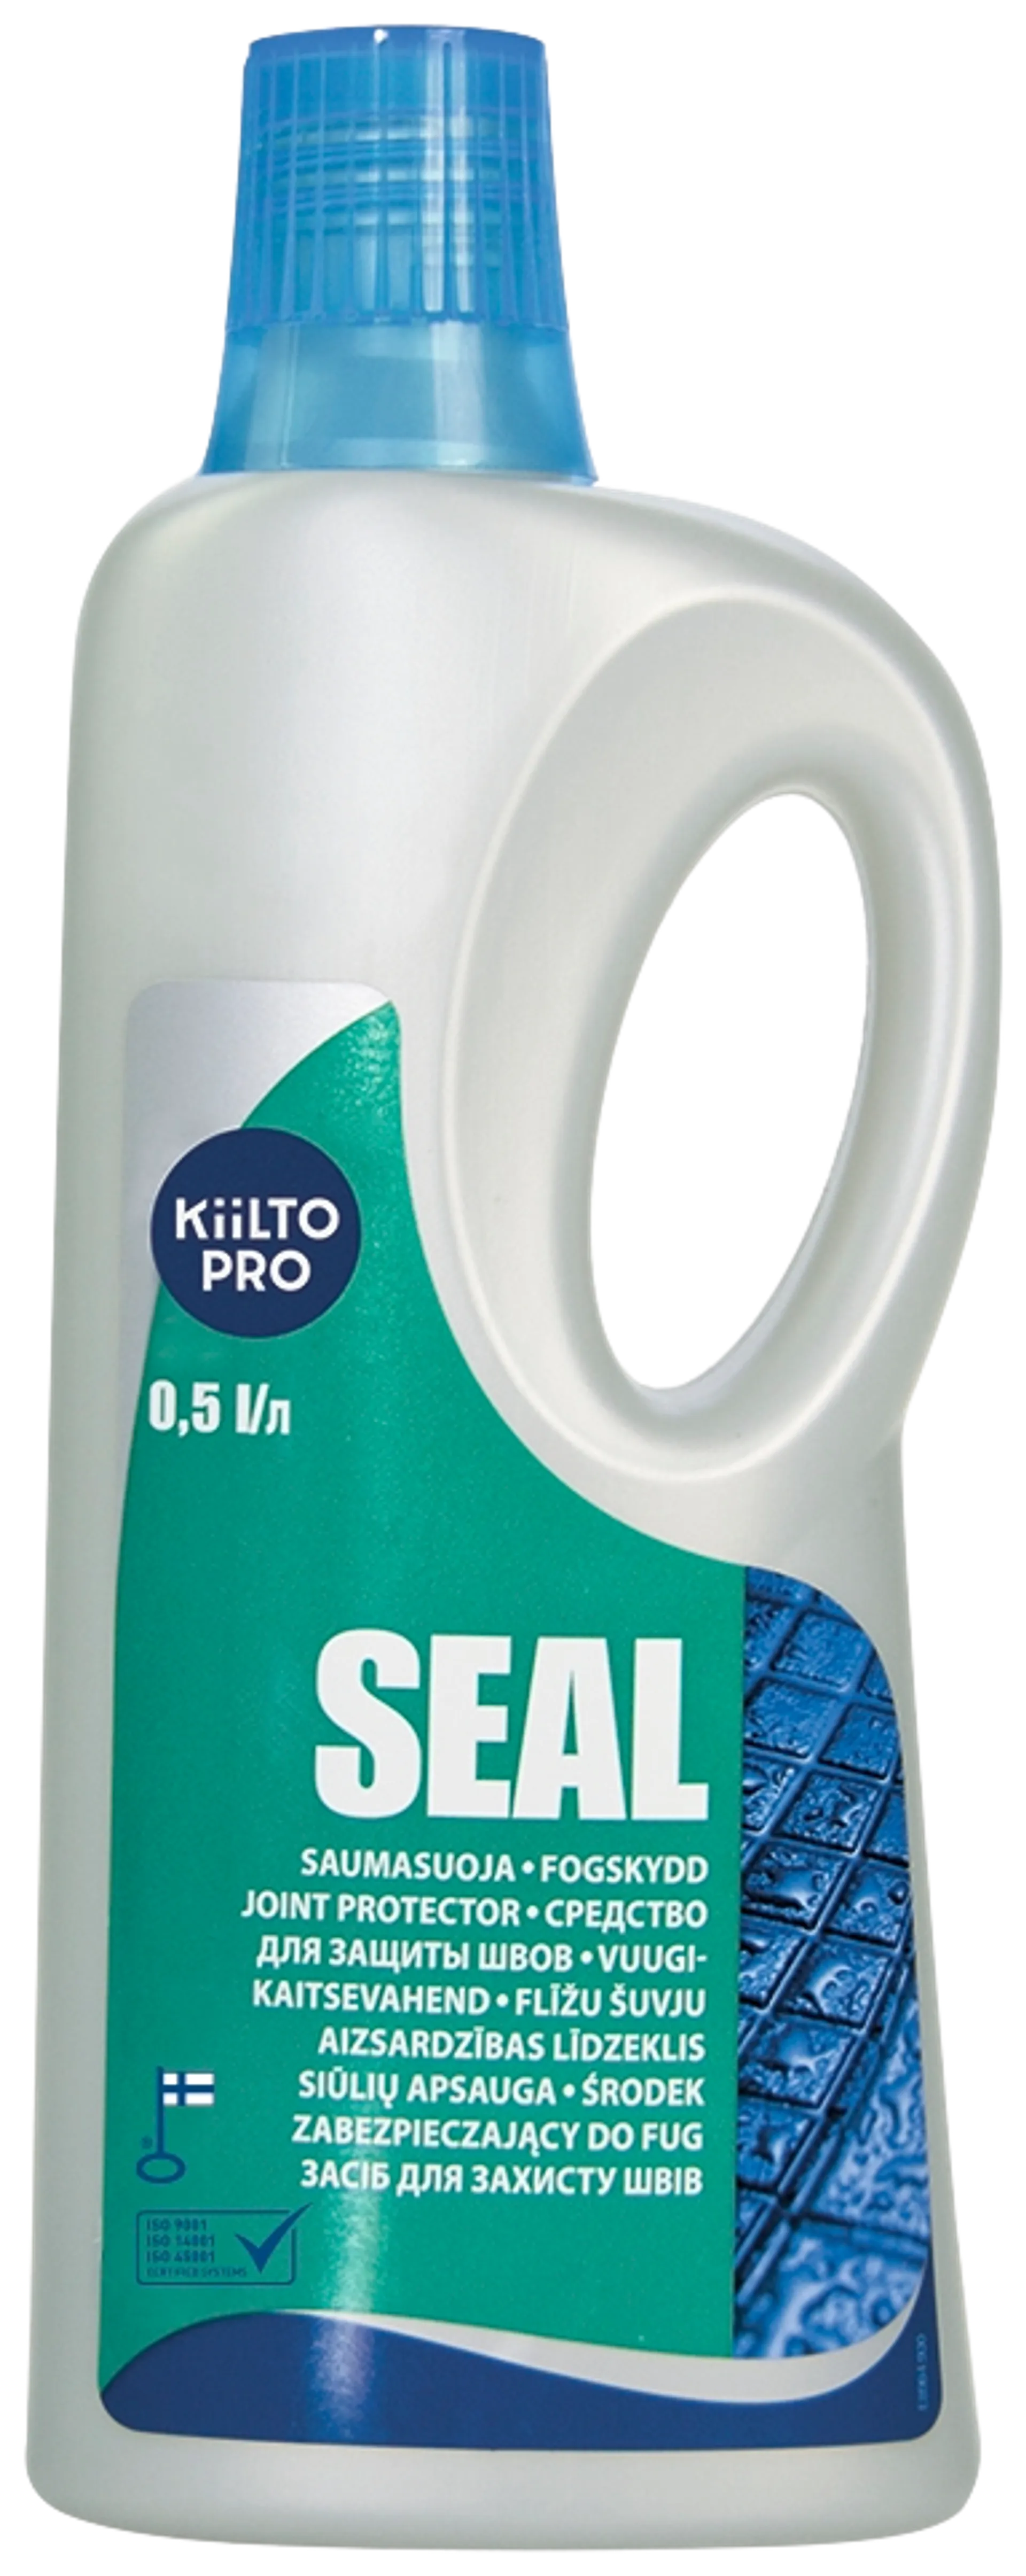 Kiilto Pro Seal Saumasuoja 500 ml